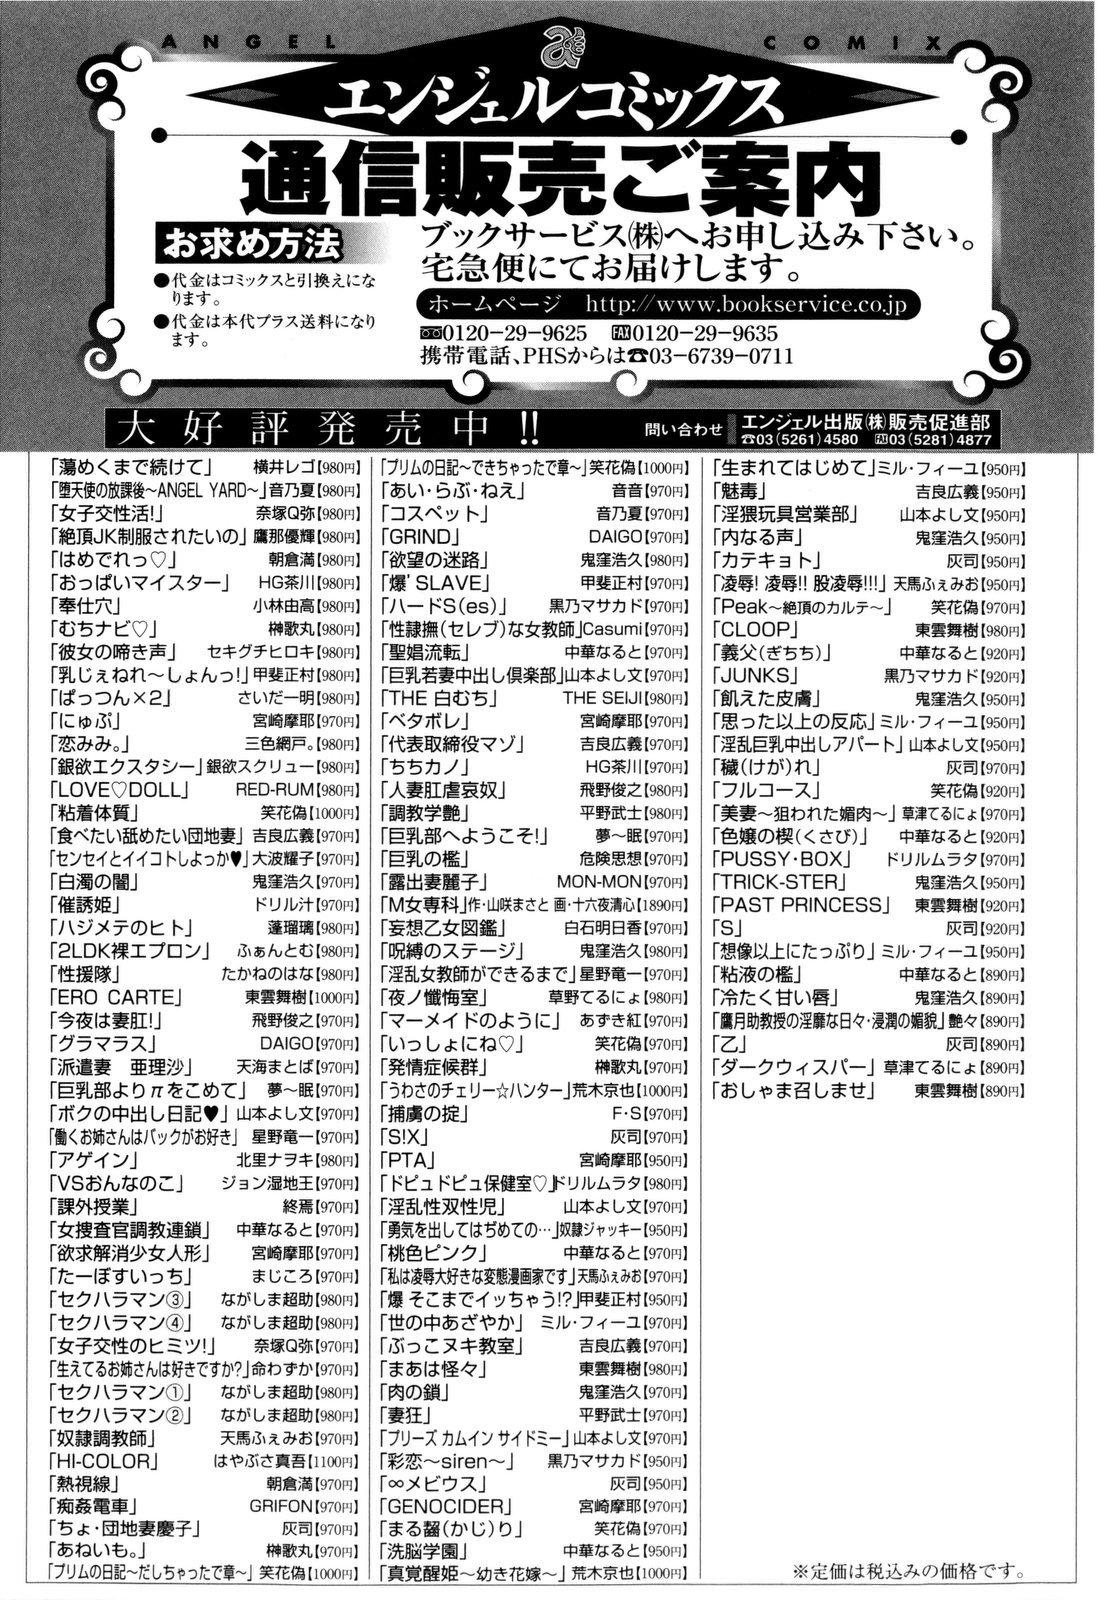 Joseito Daihyakka - Schoolgirl Encyclopedia 171